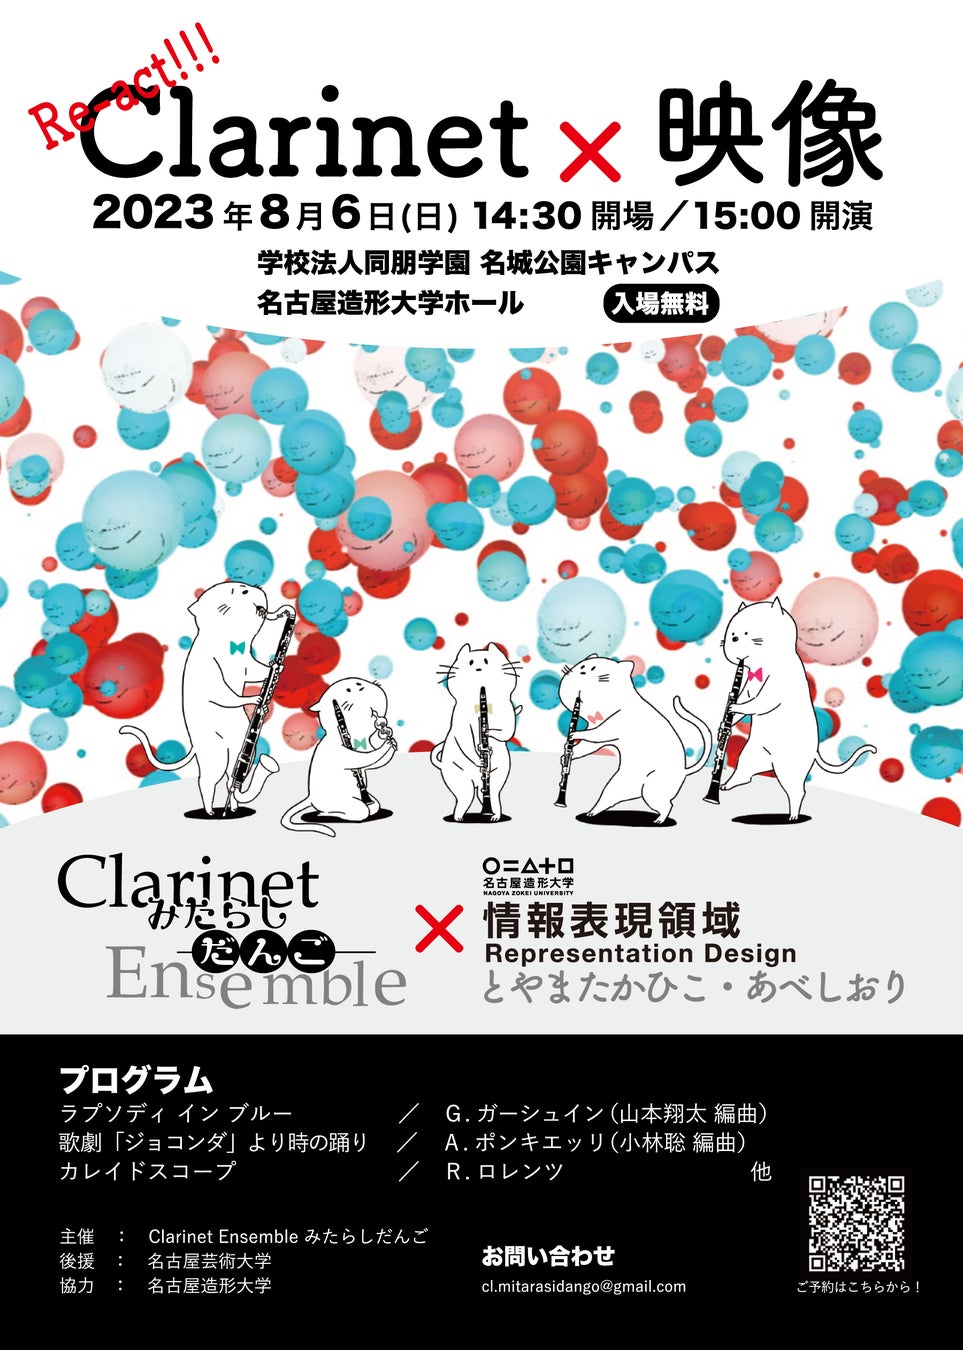 【名古屋造形大学】「Clarinet × 映像」演奏会を開催します